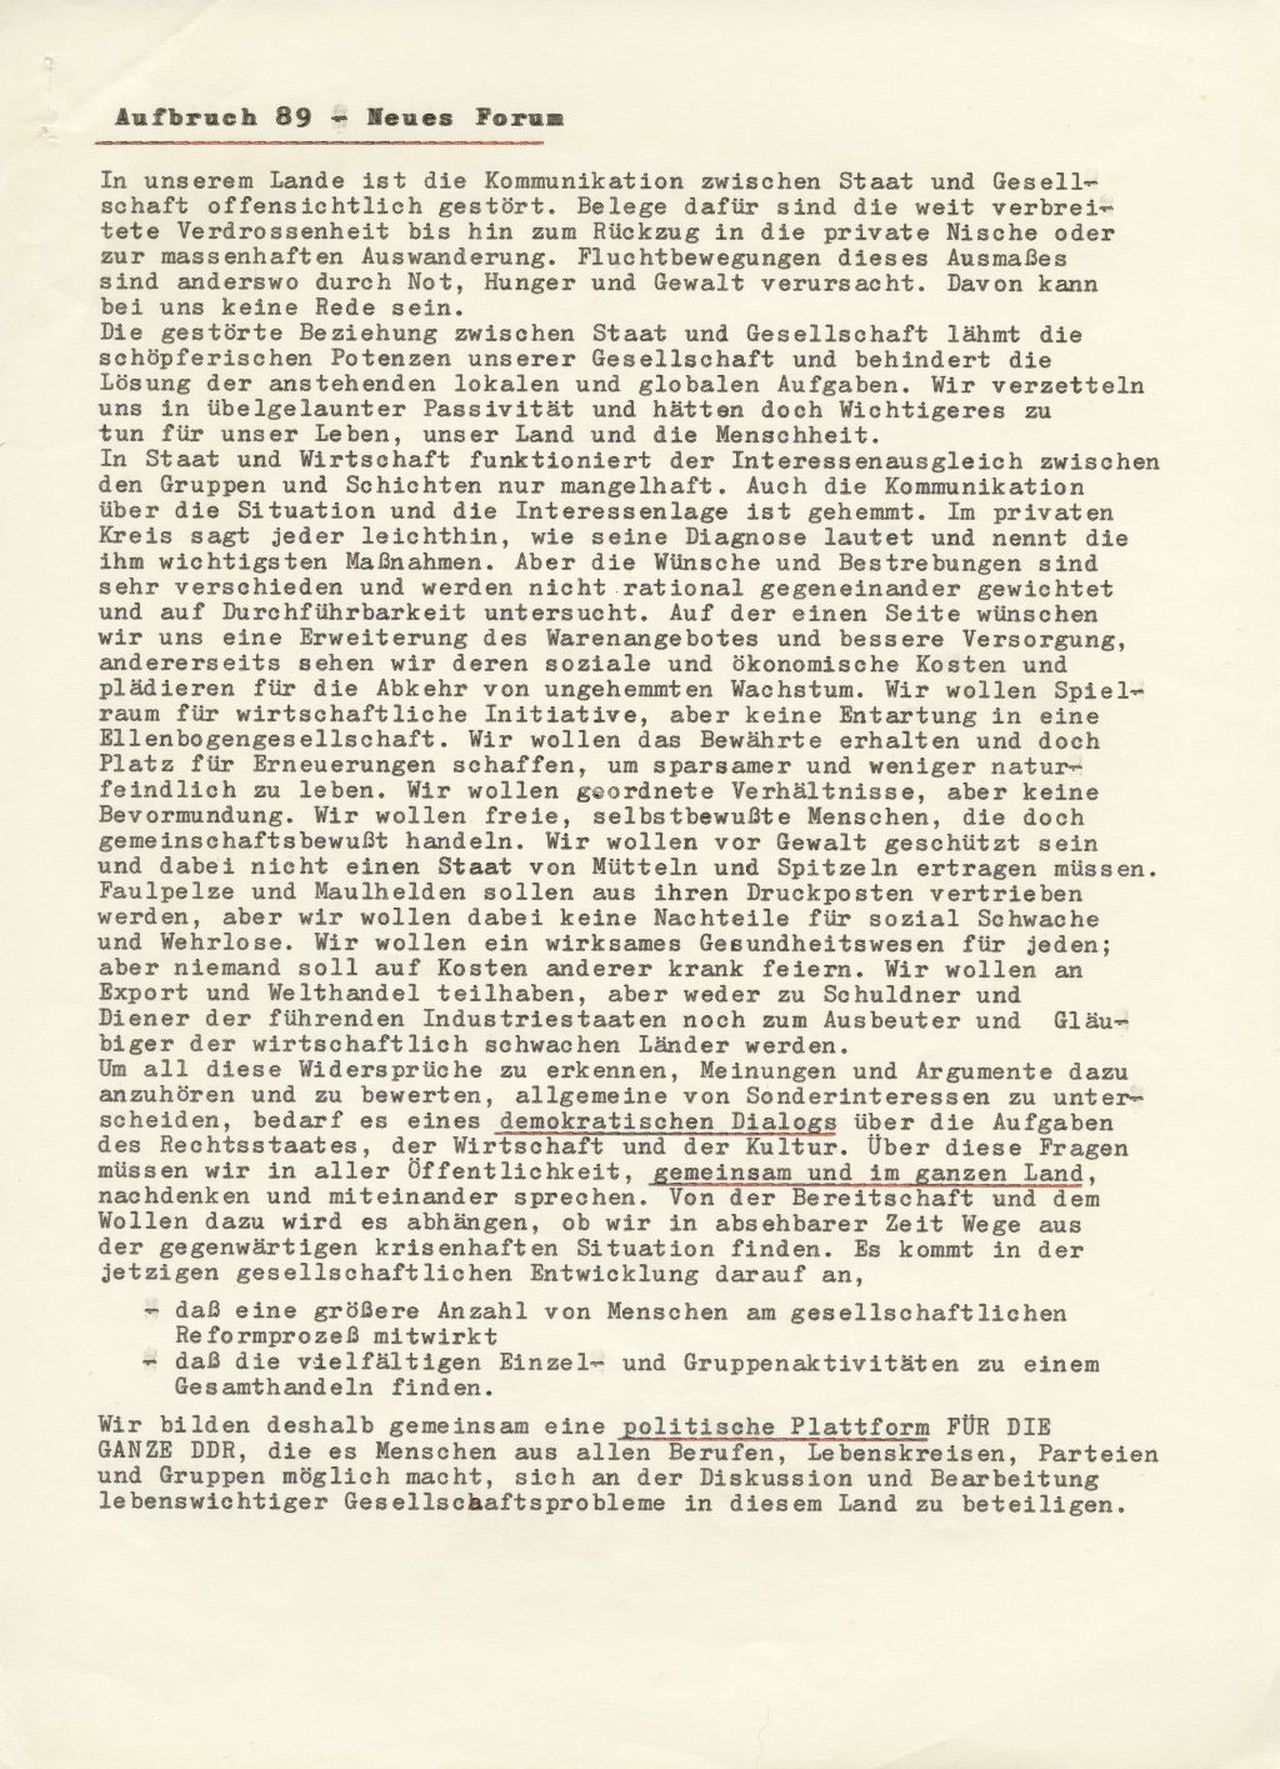 Zwei seitiger typographischer Text mit dem Gründungsaufruf des Neuen Forums - Aufbruch 89 mit Auflistung der Erstunterzeichner.